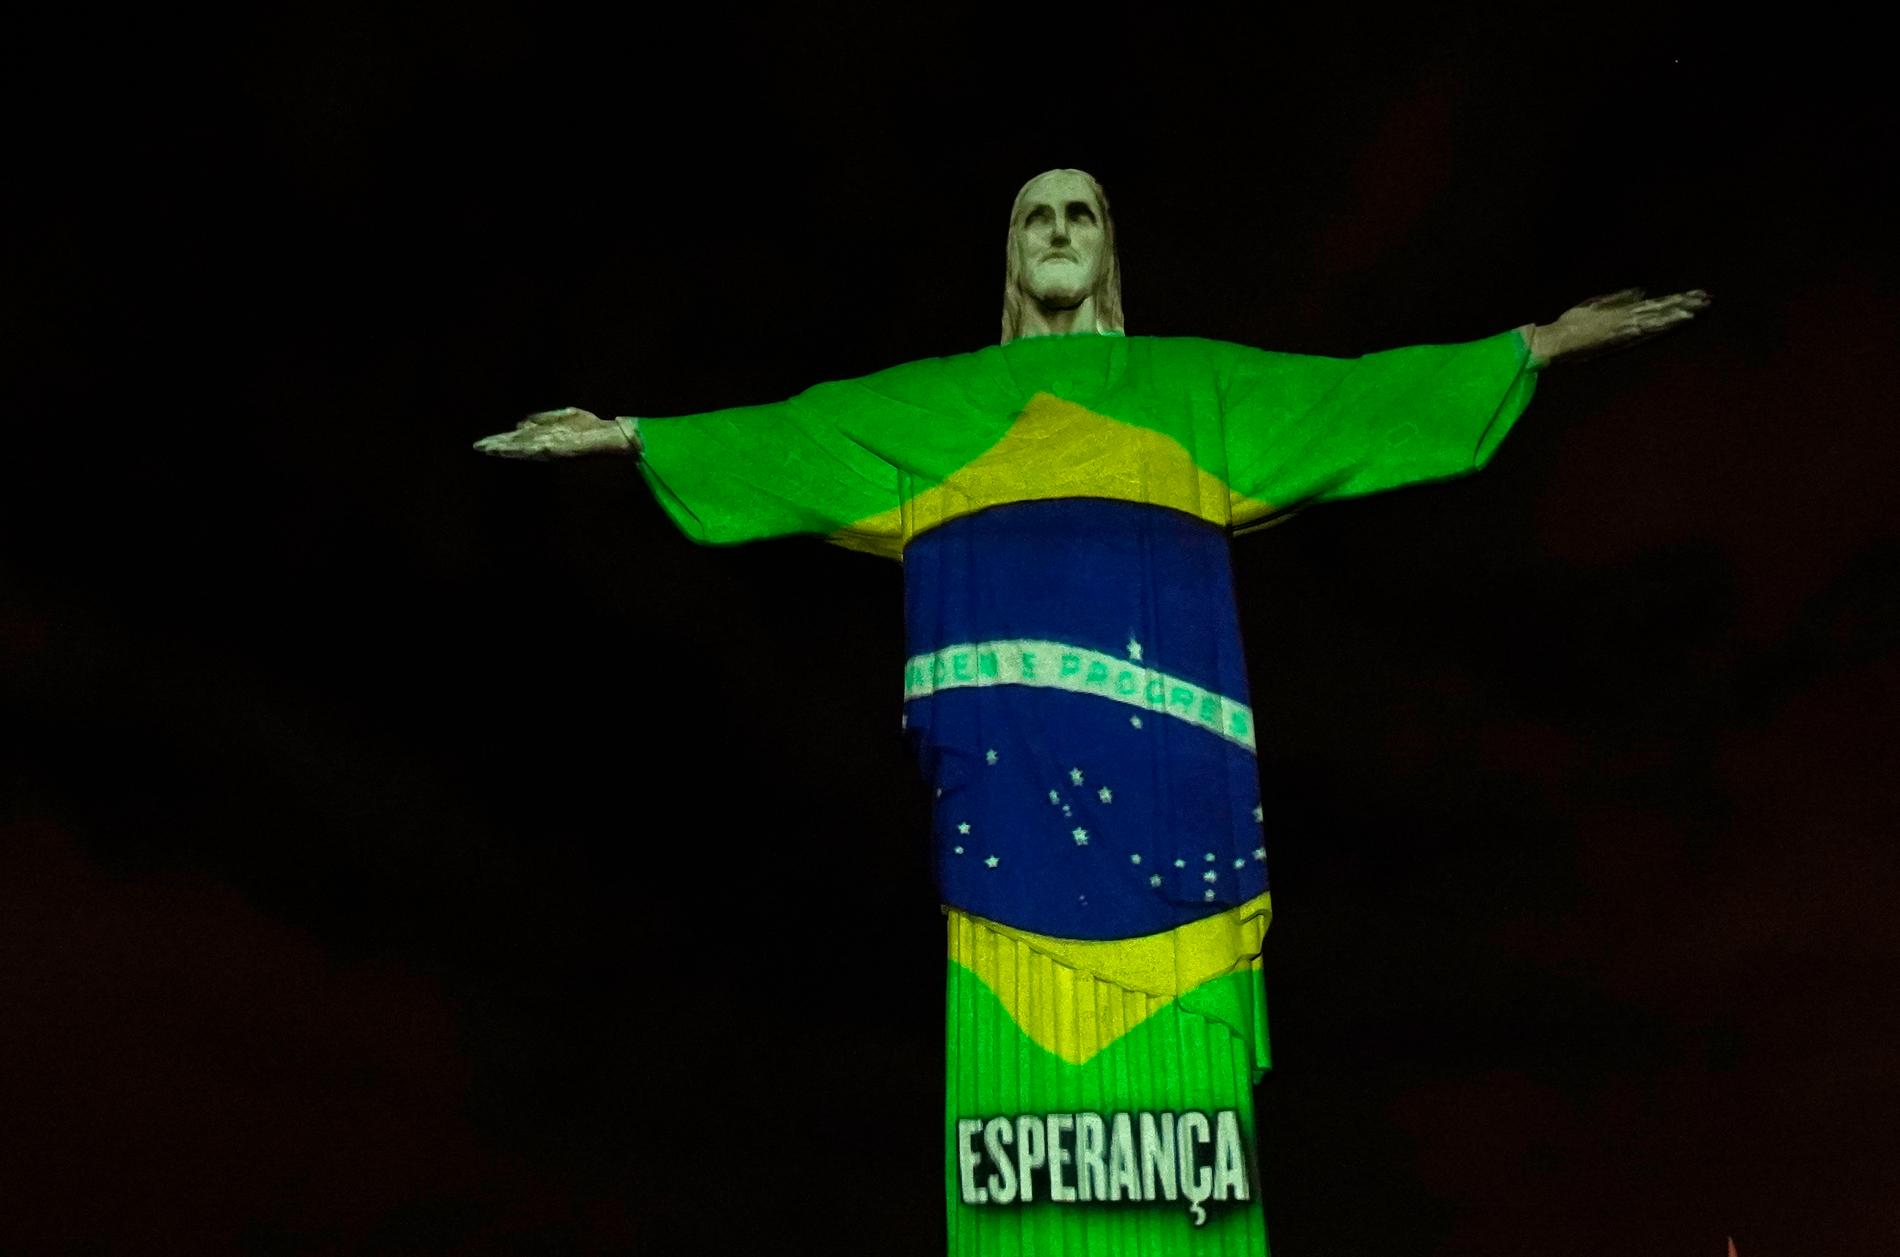 Den berömda Kristusstatyn i Rio de Janeiro i Brasilien lyses upp med olika motiv under coronakrisen i landet.